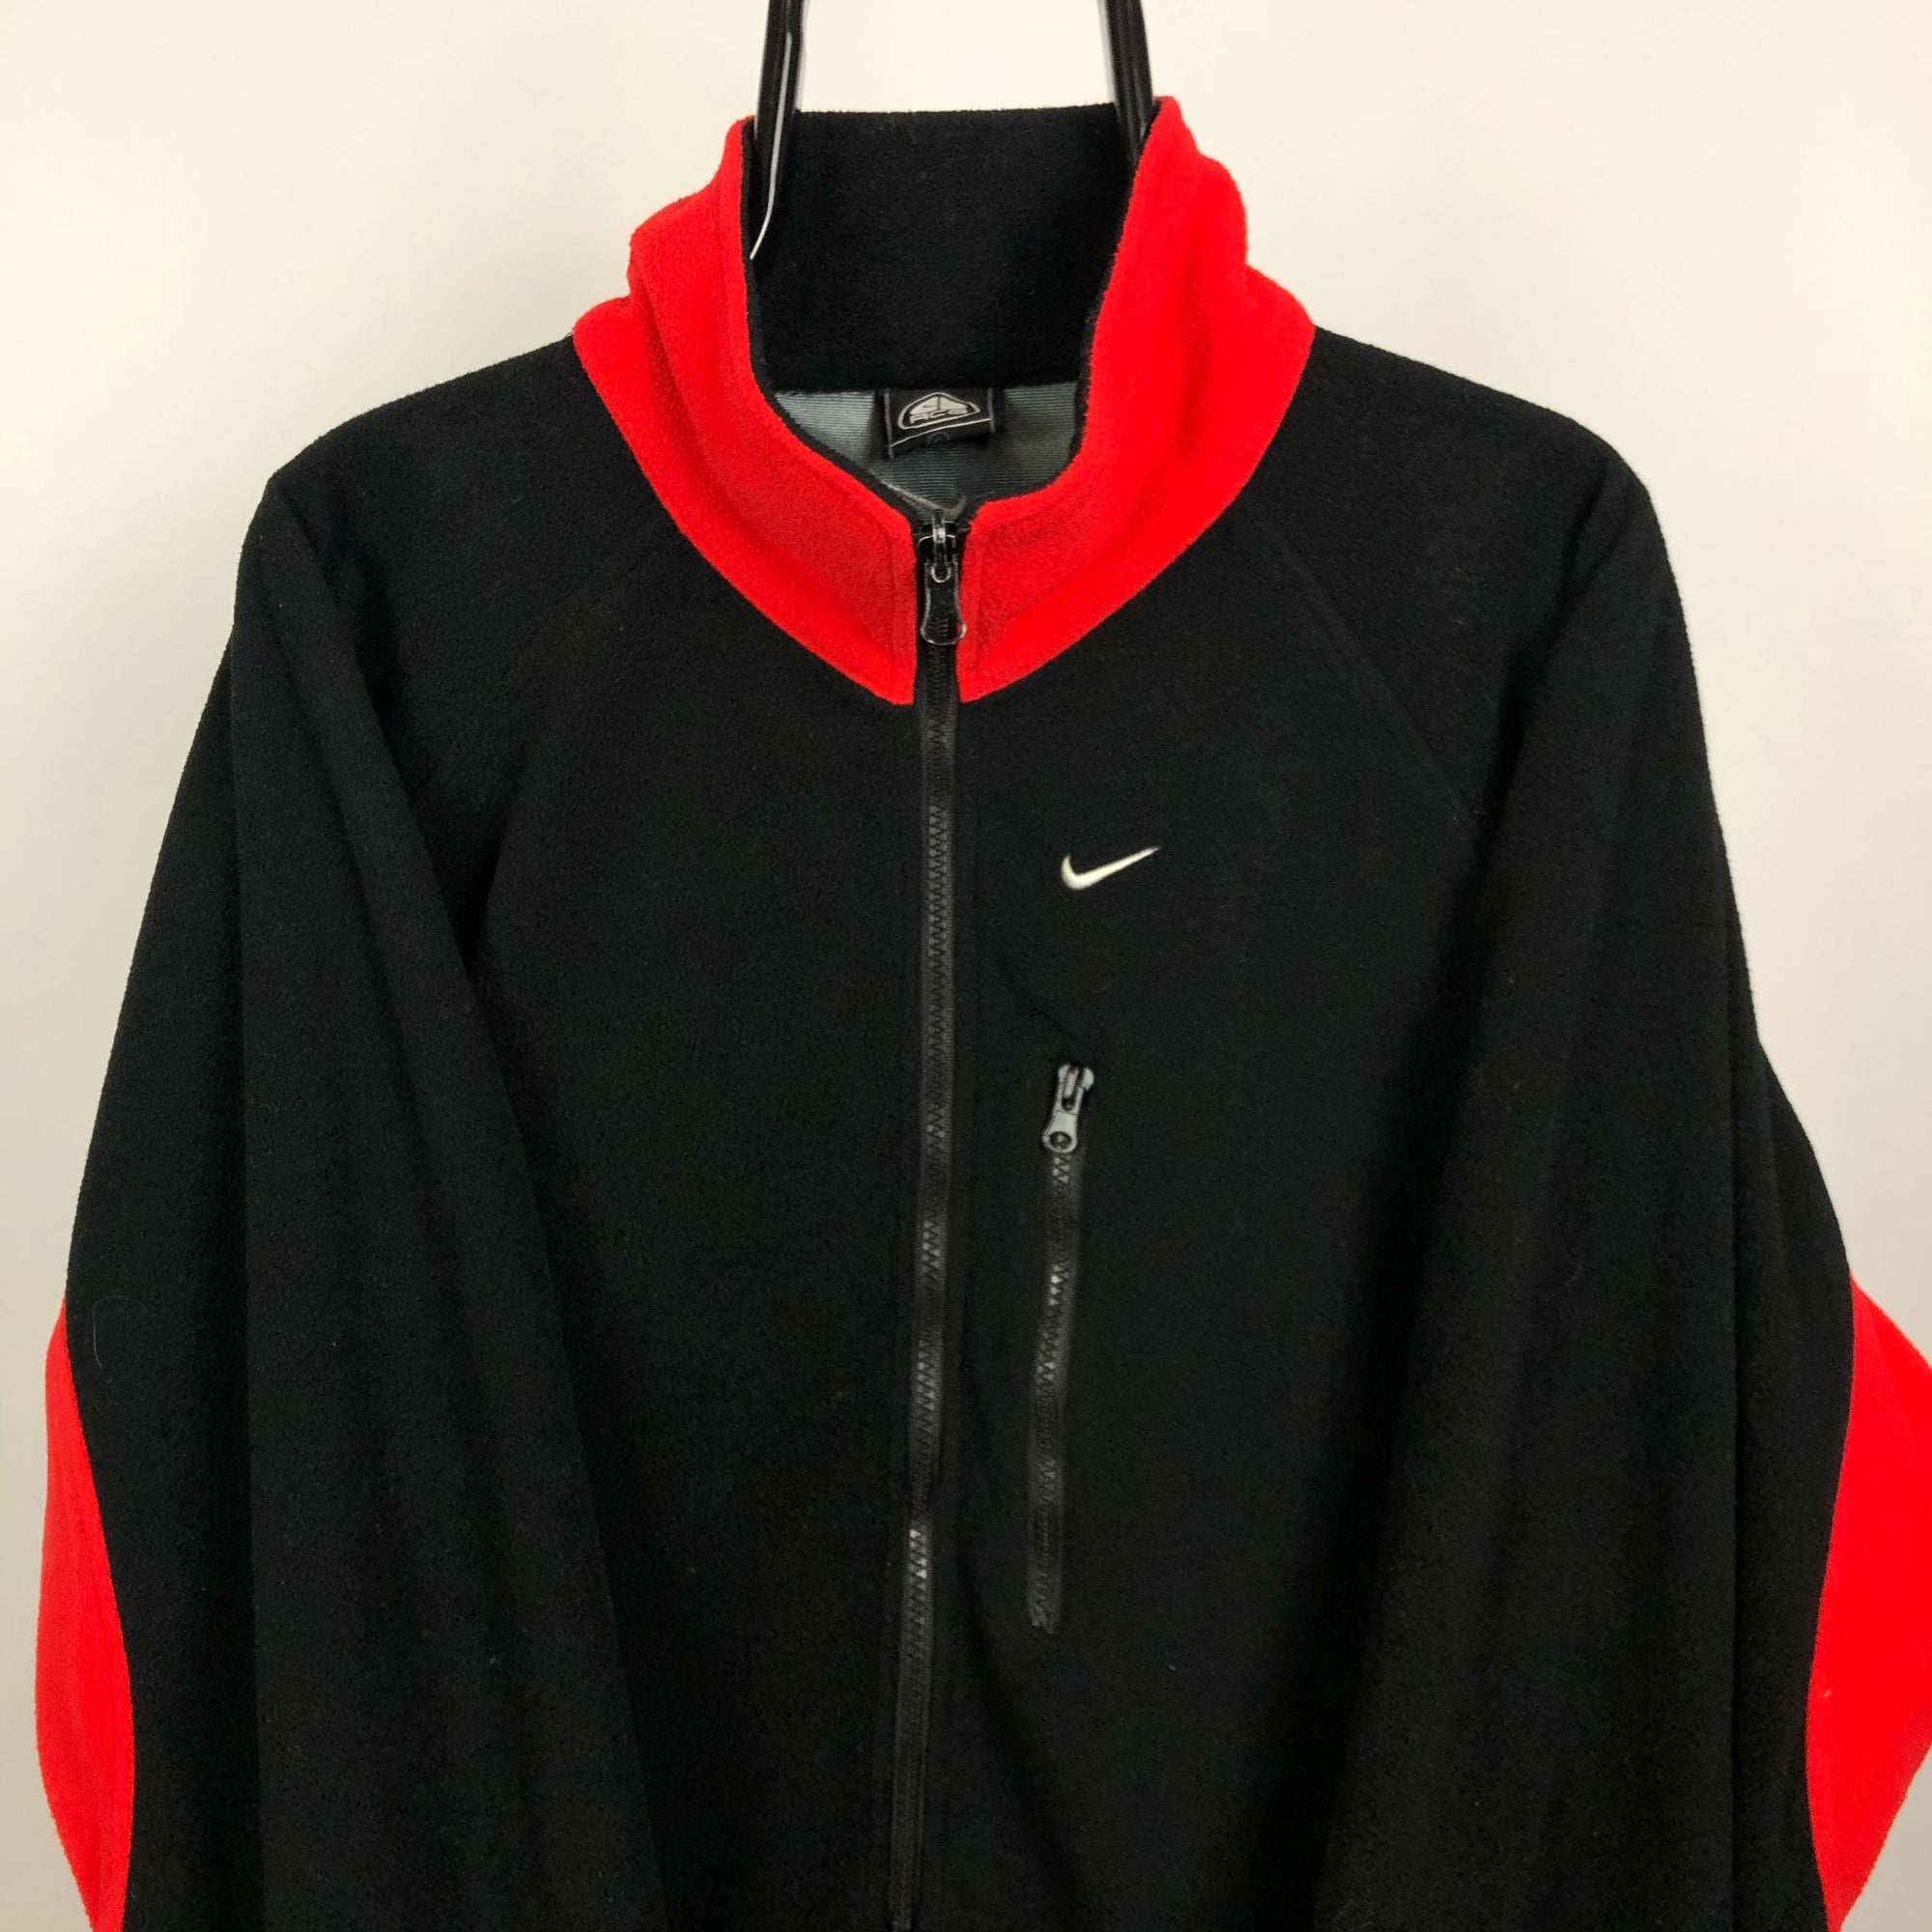 Vintage Nike ACG Fleece in Red/Black - Men's Large/Women's XL